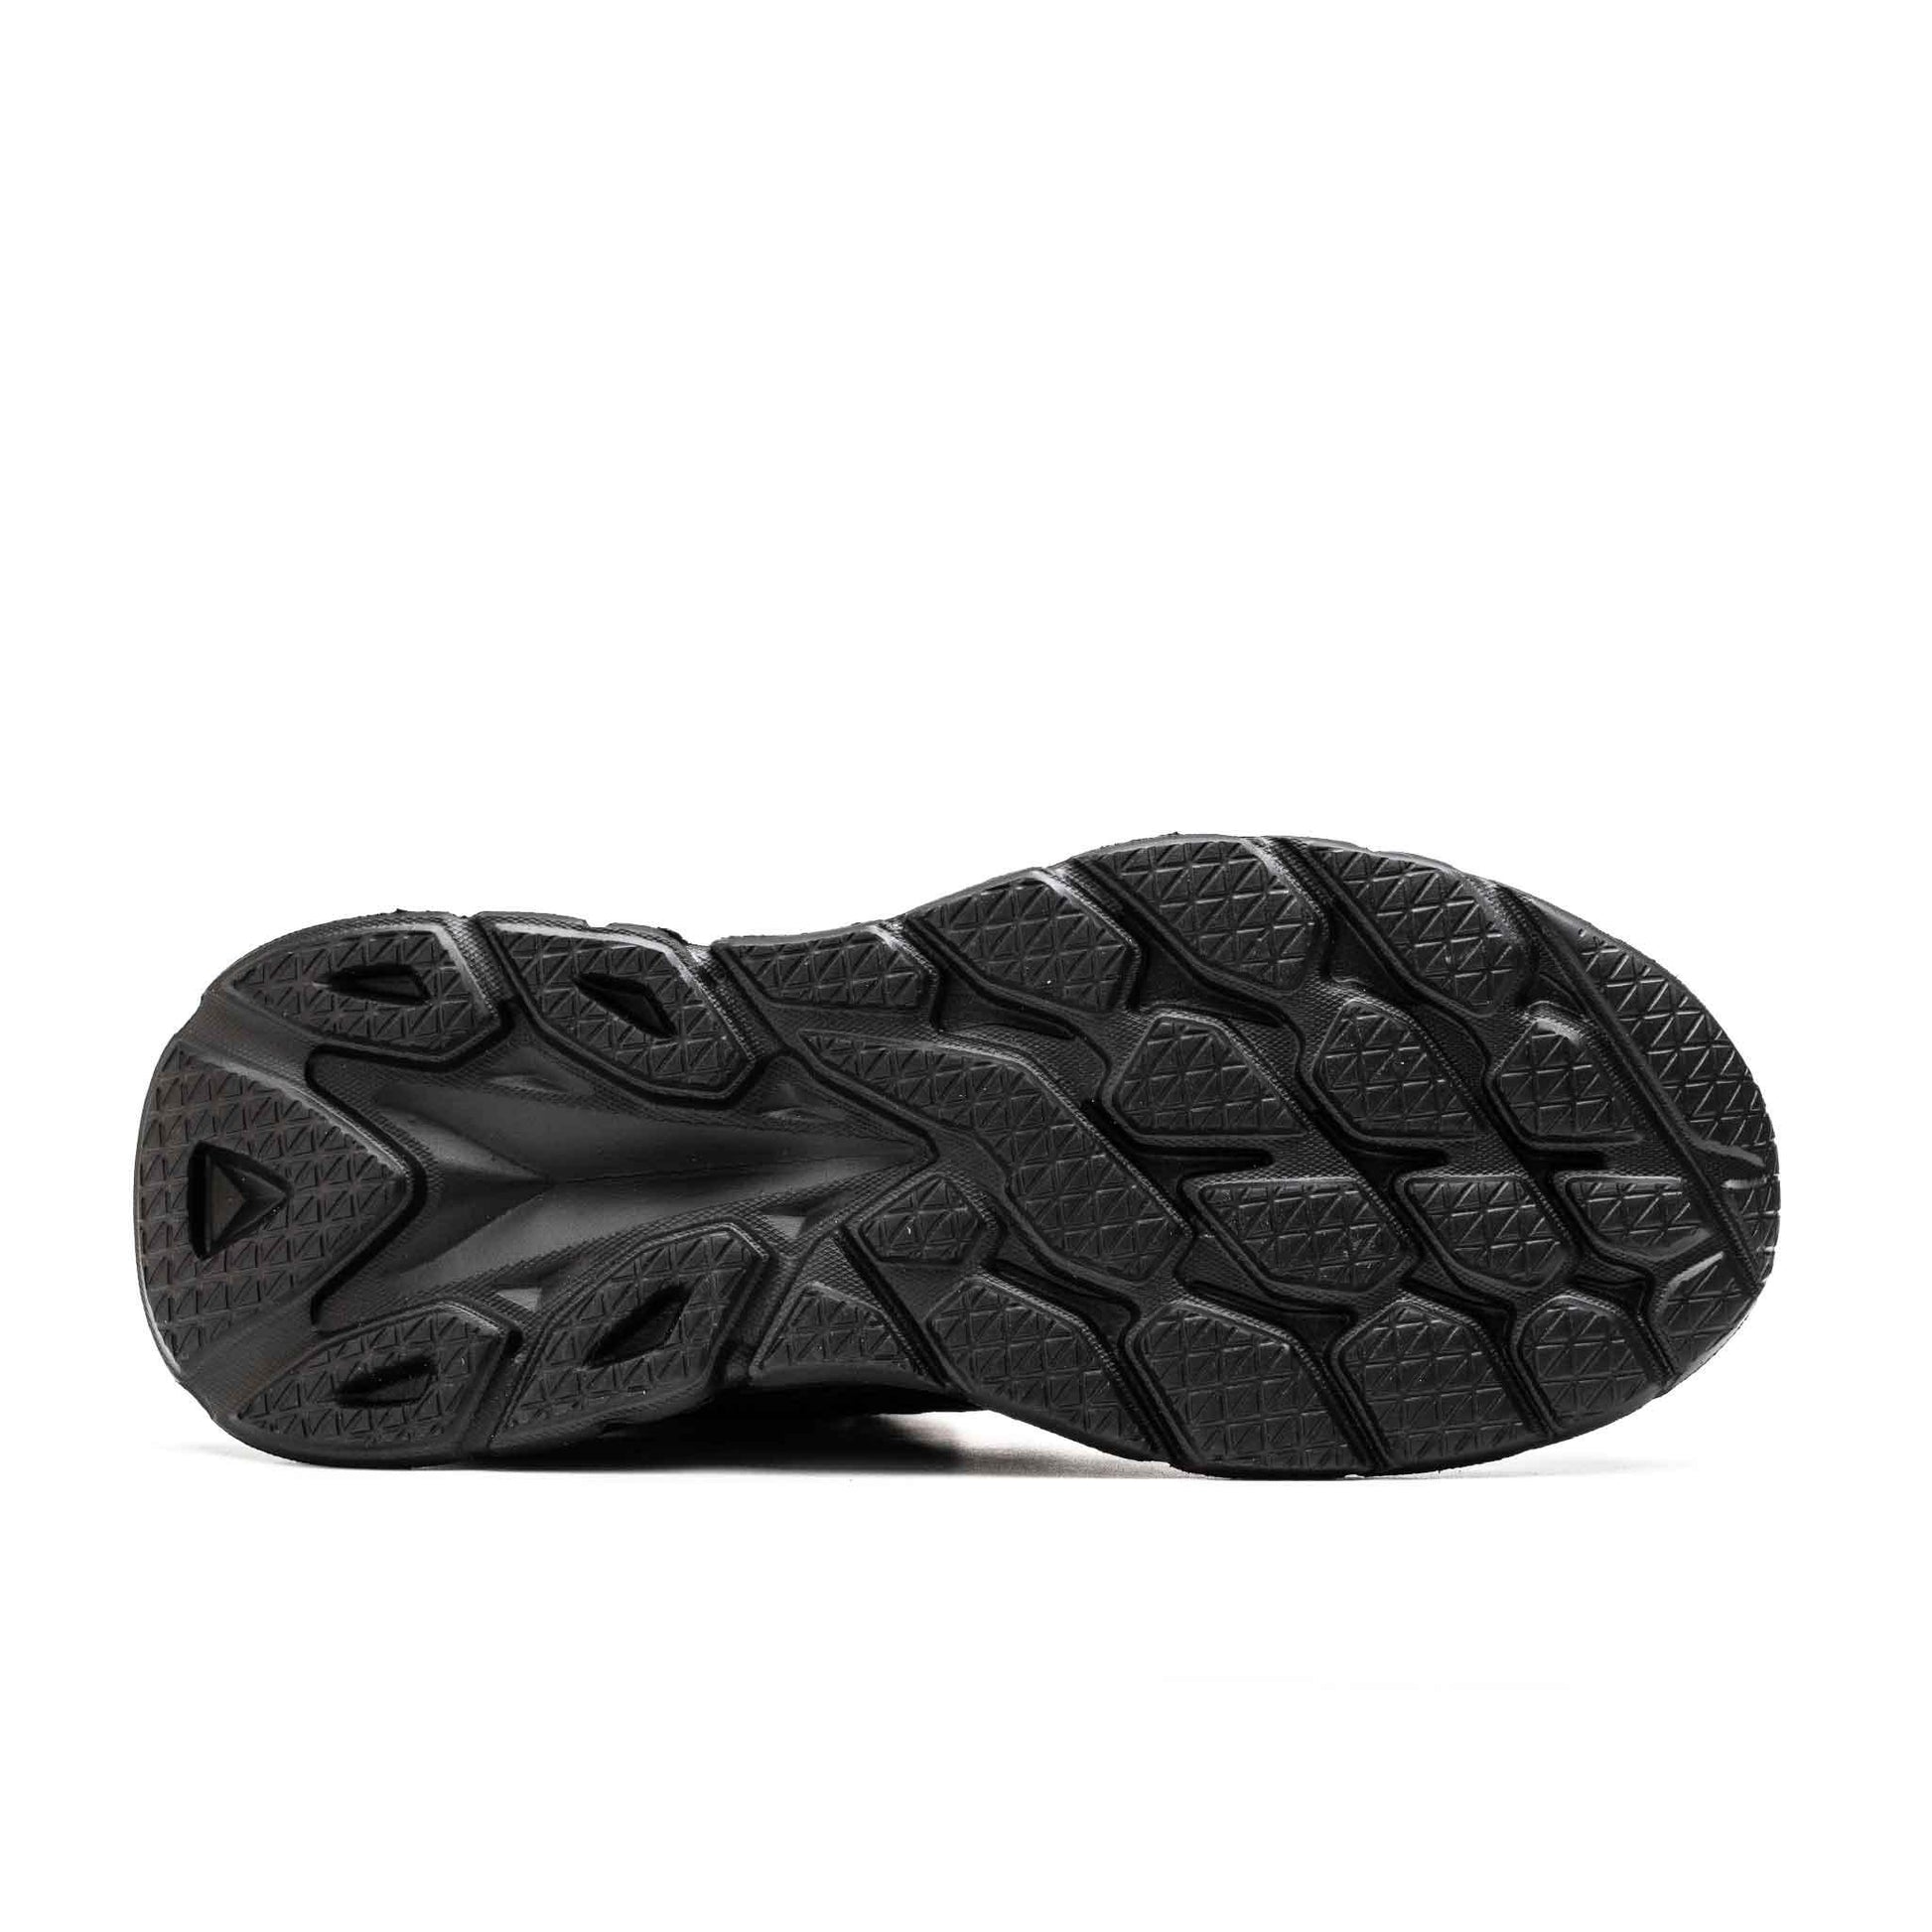 Men's Steel Toe Work Boots - Slip Resistant | B224 - USINE PRO Footwear